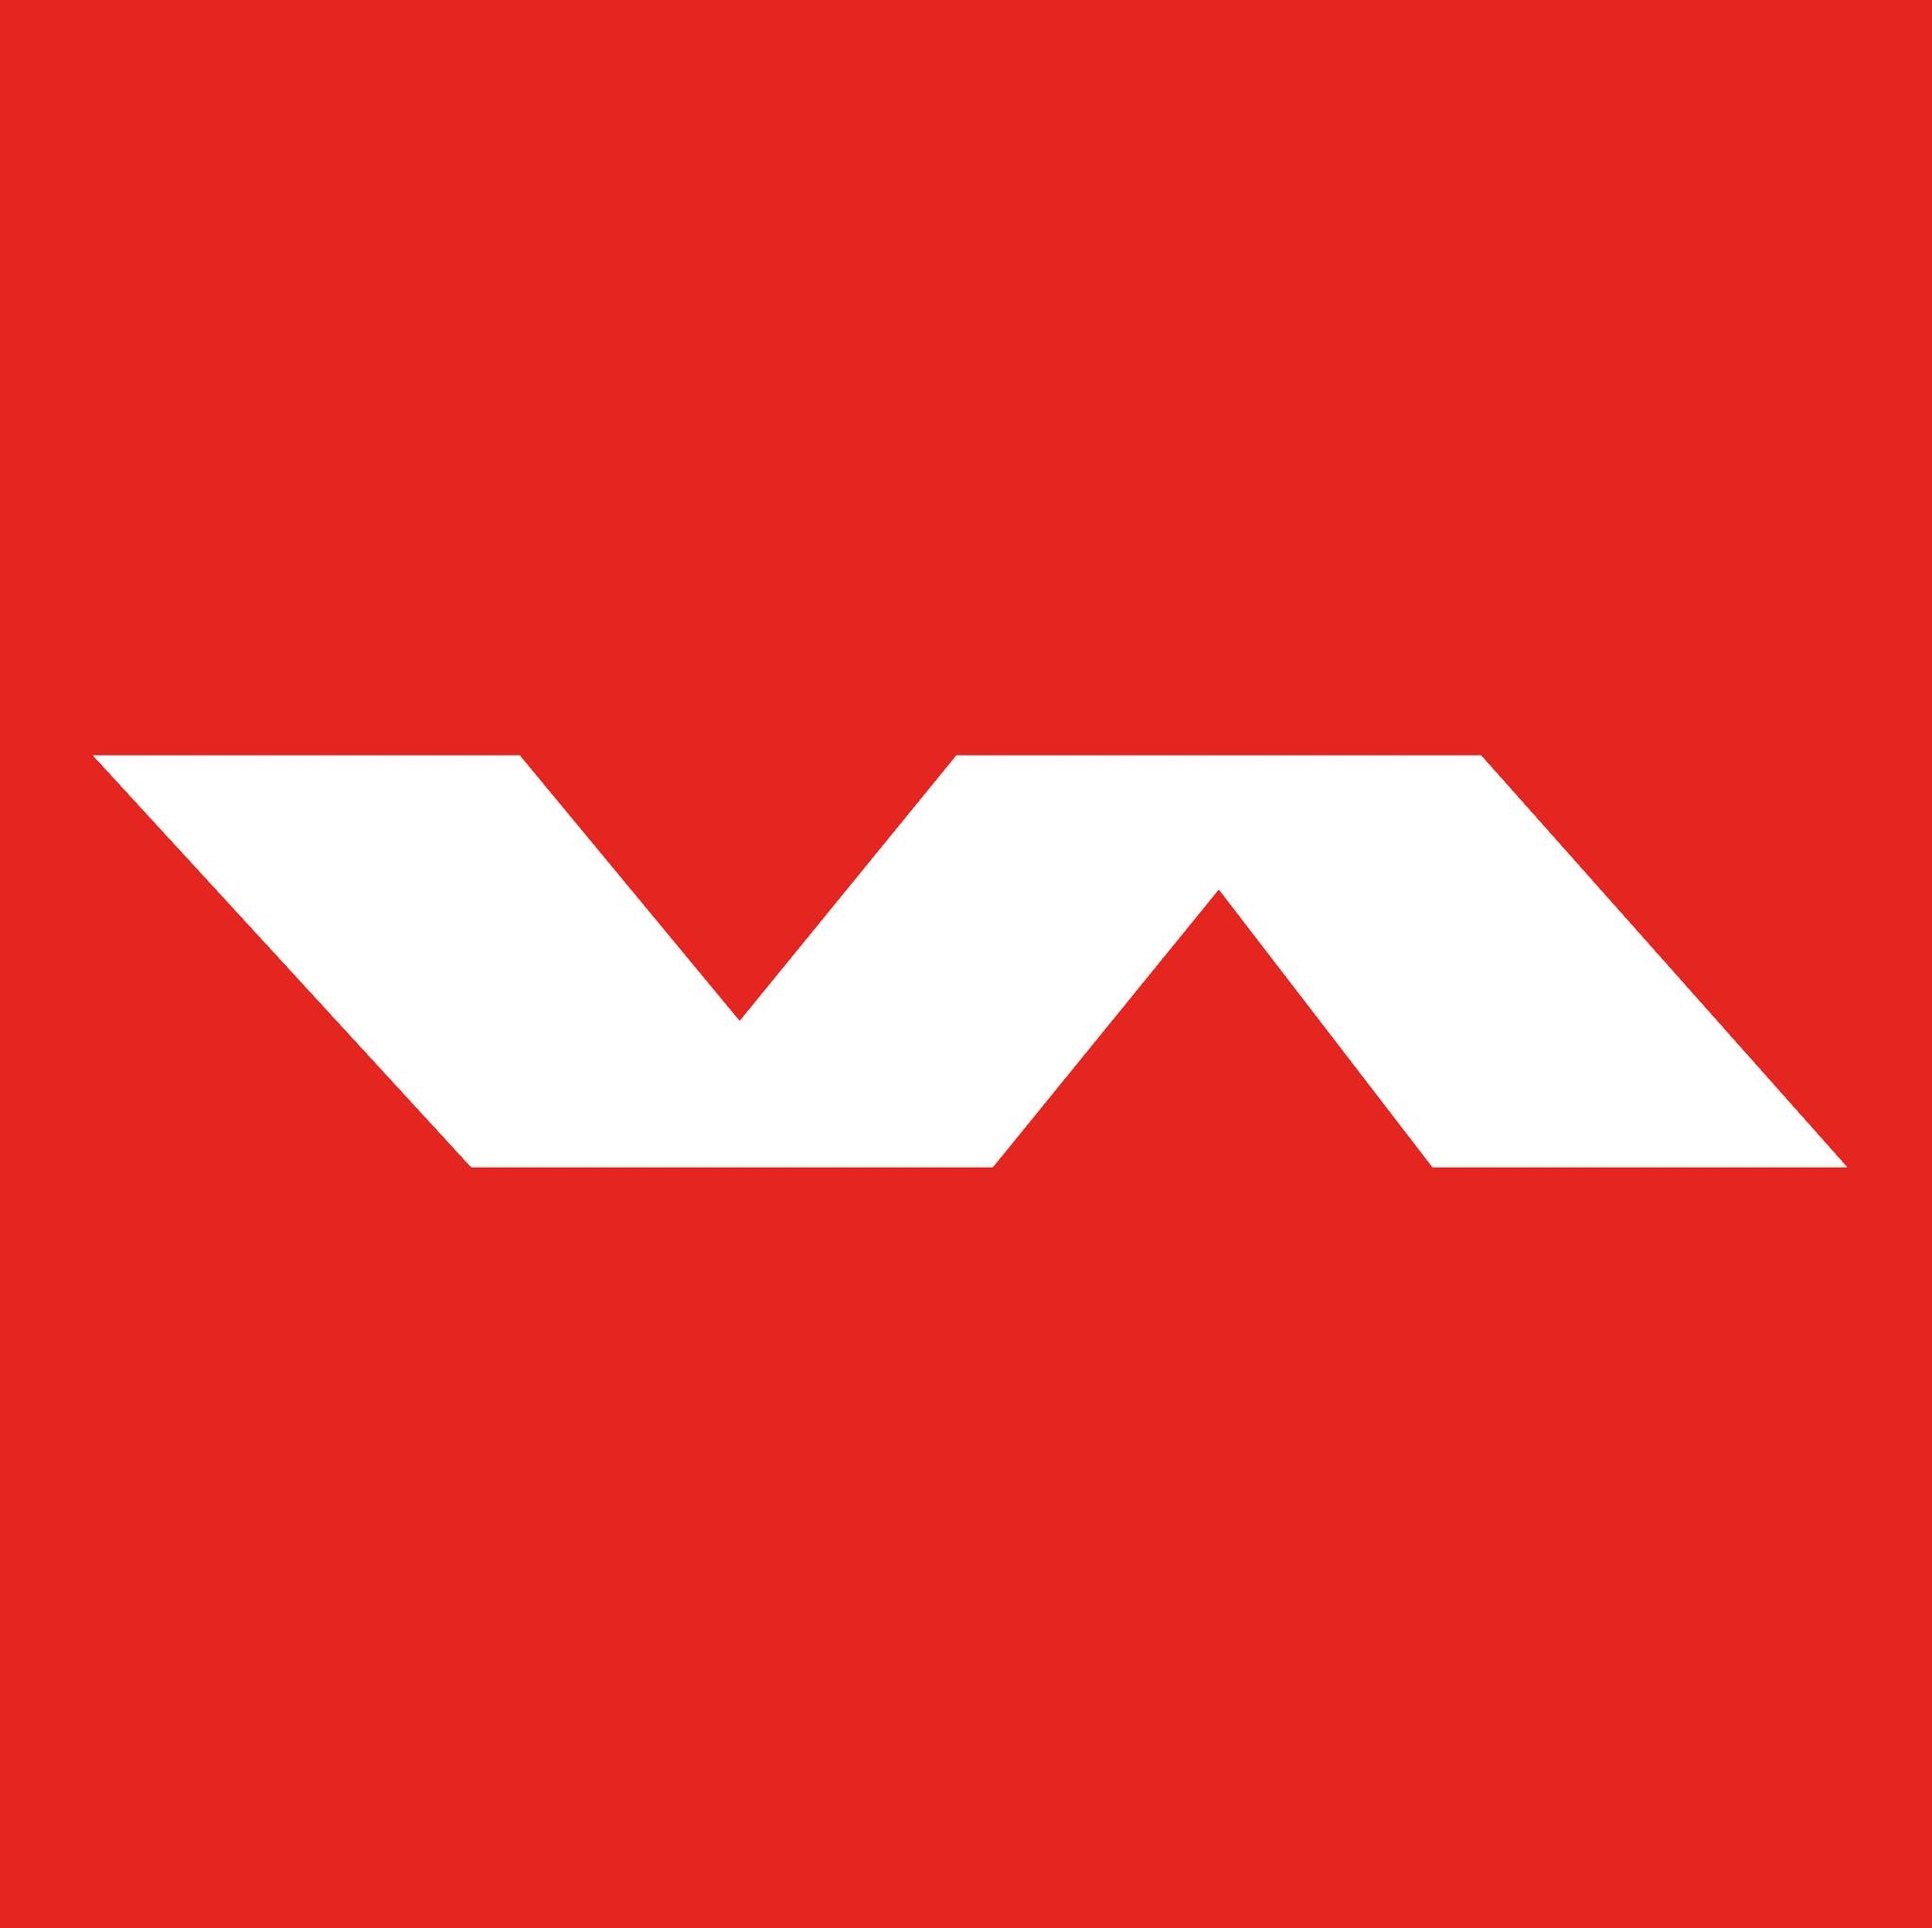 Logo Varlion